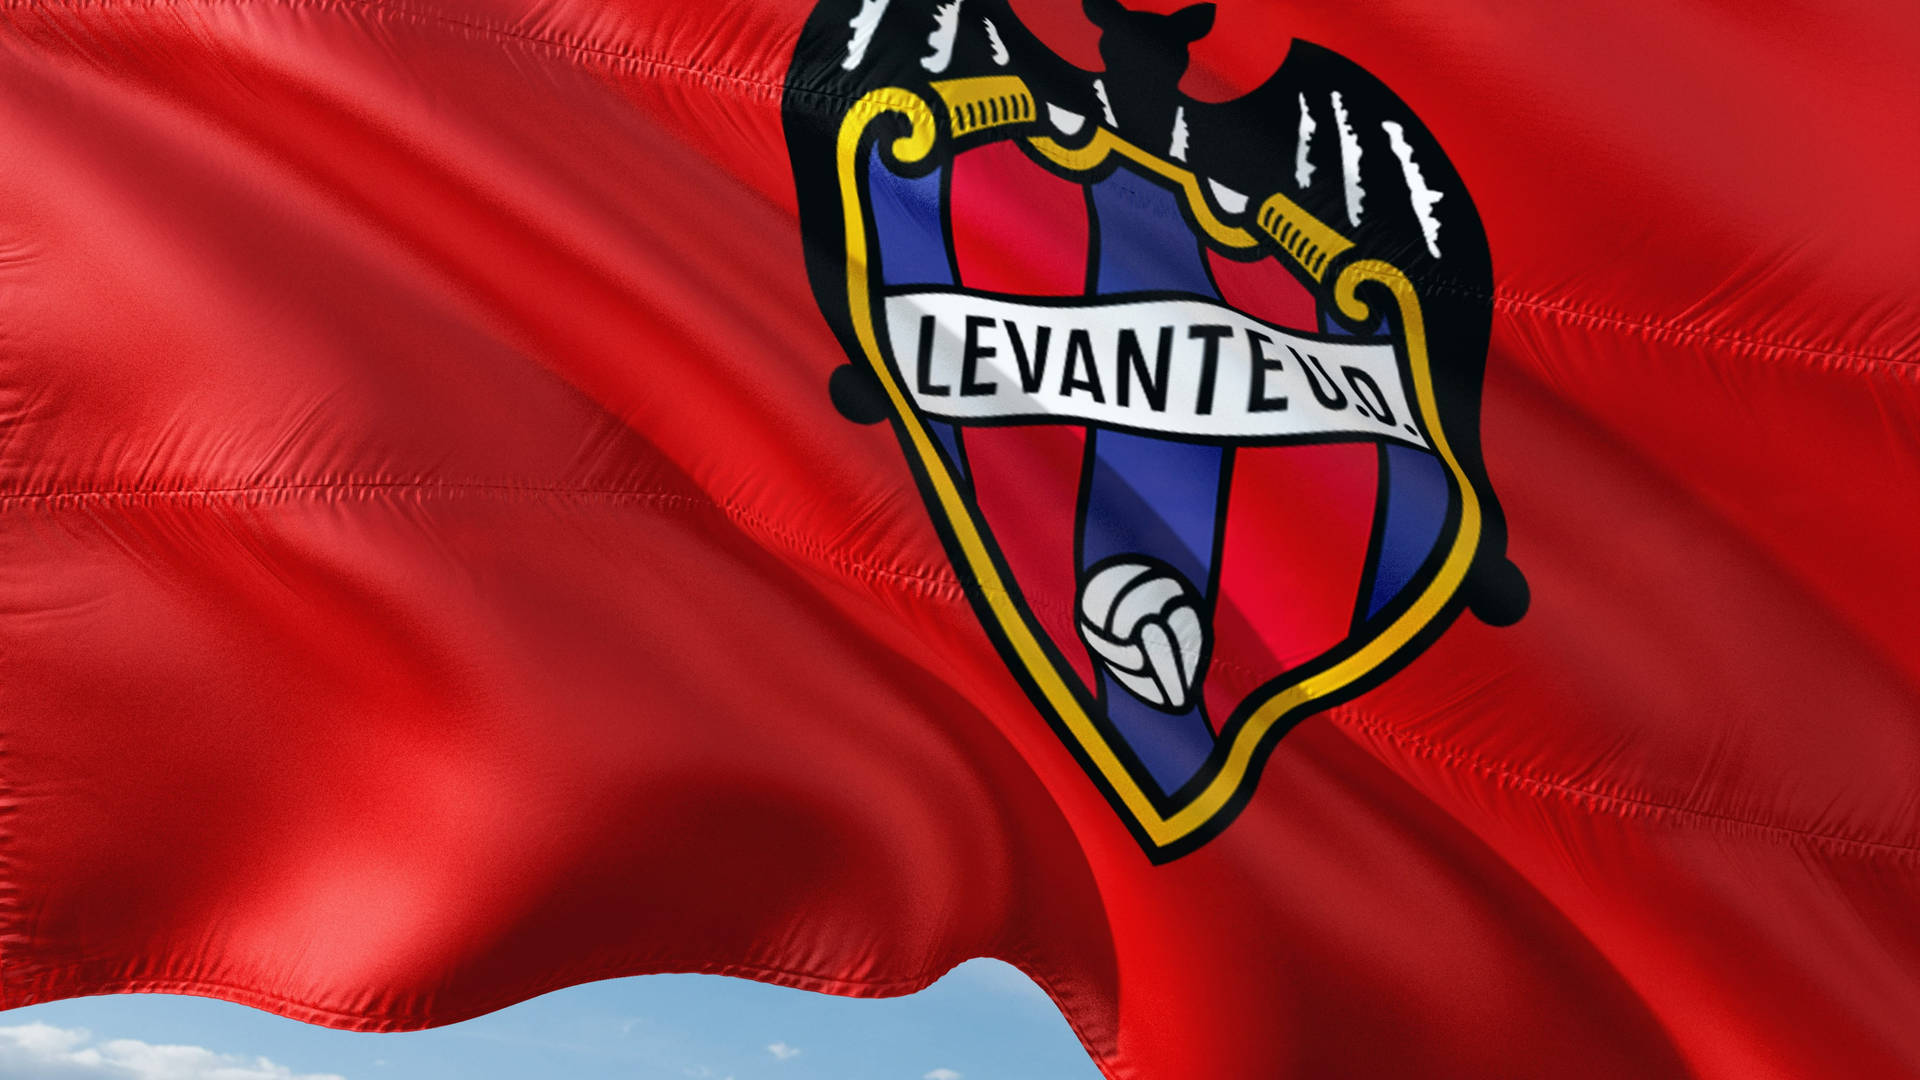 La Liga Levante Banner Background